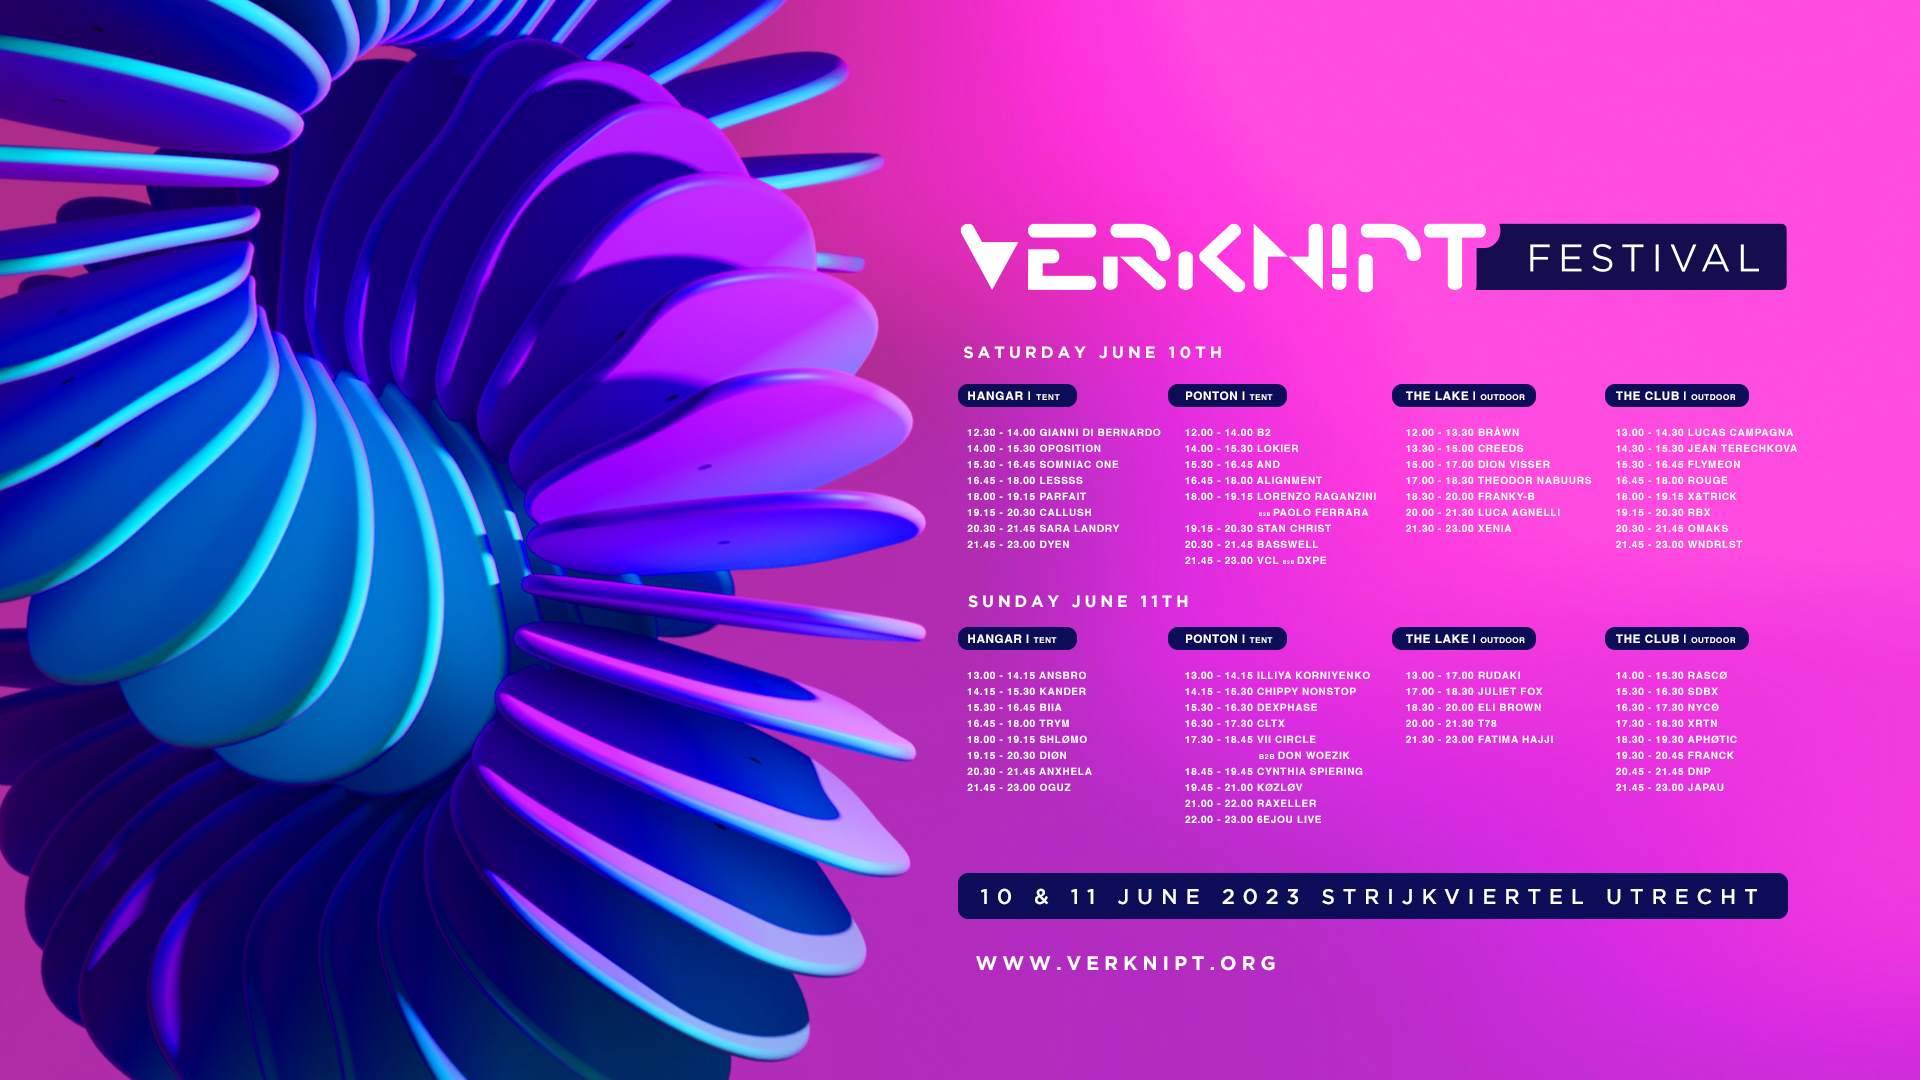 VERKNIPT Festival 2023 - フライヤー表